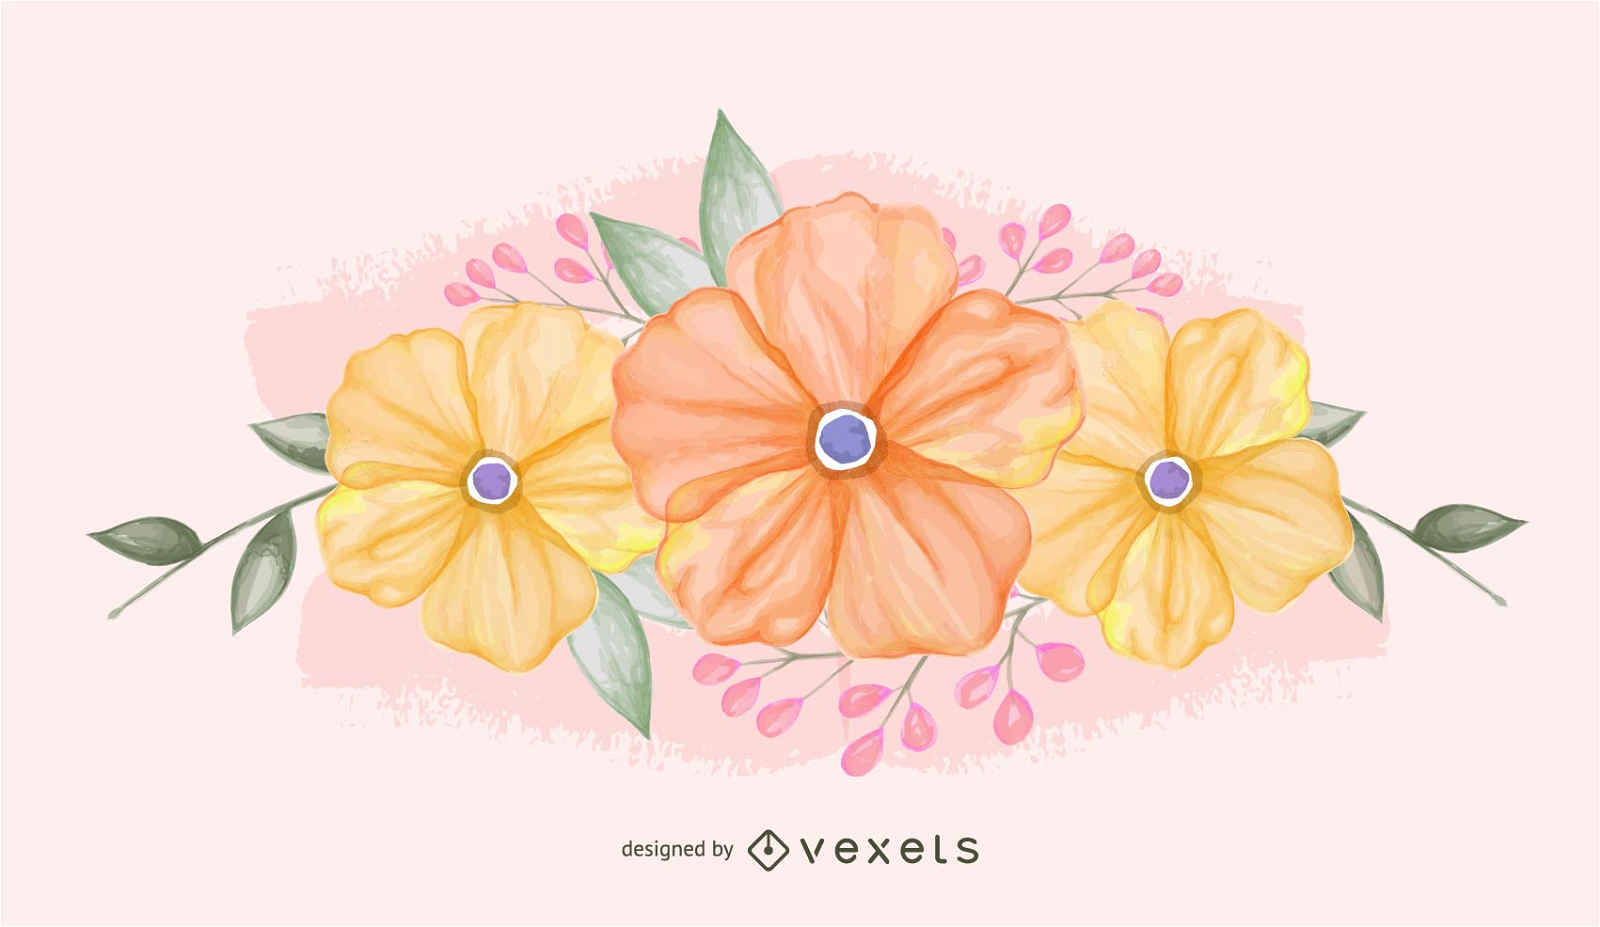 Illustrated pastel flowers